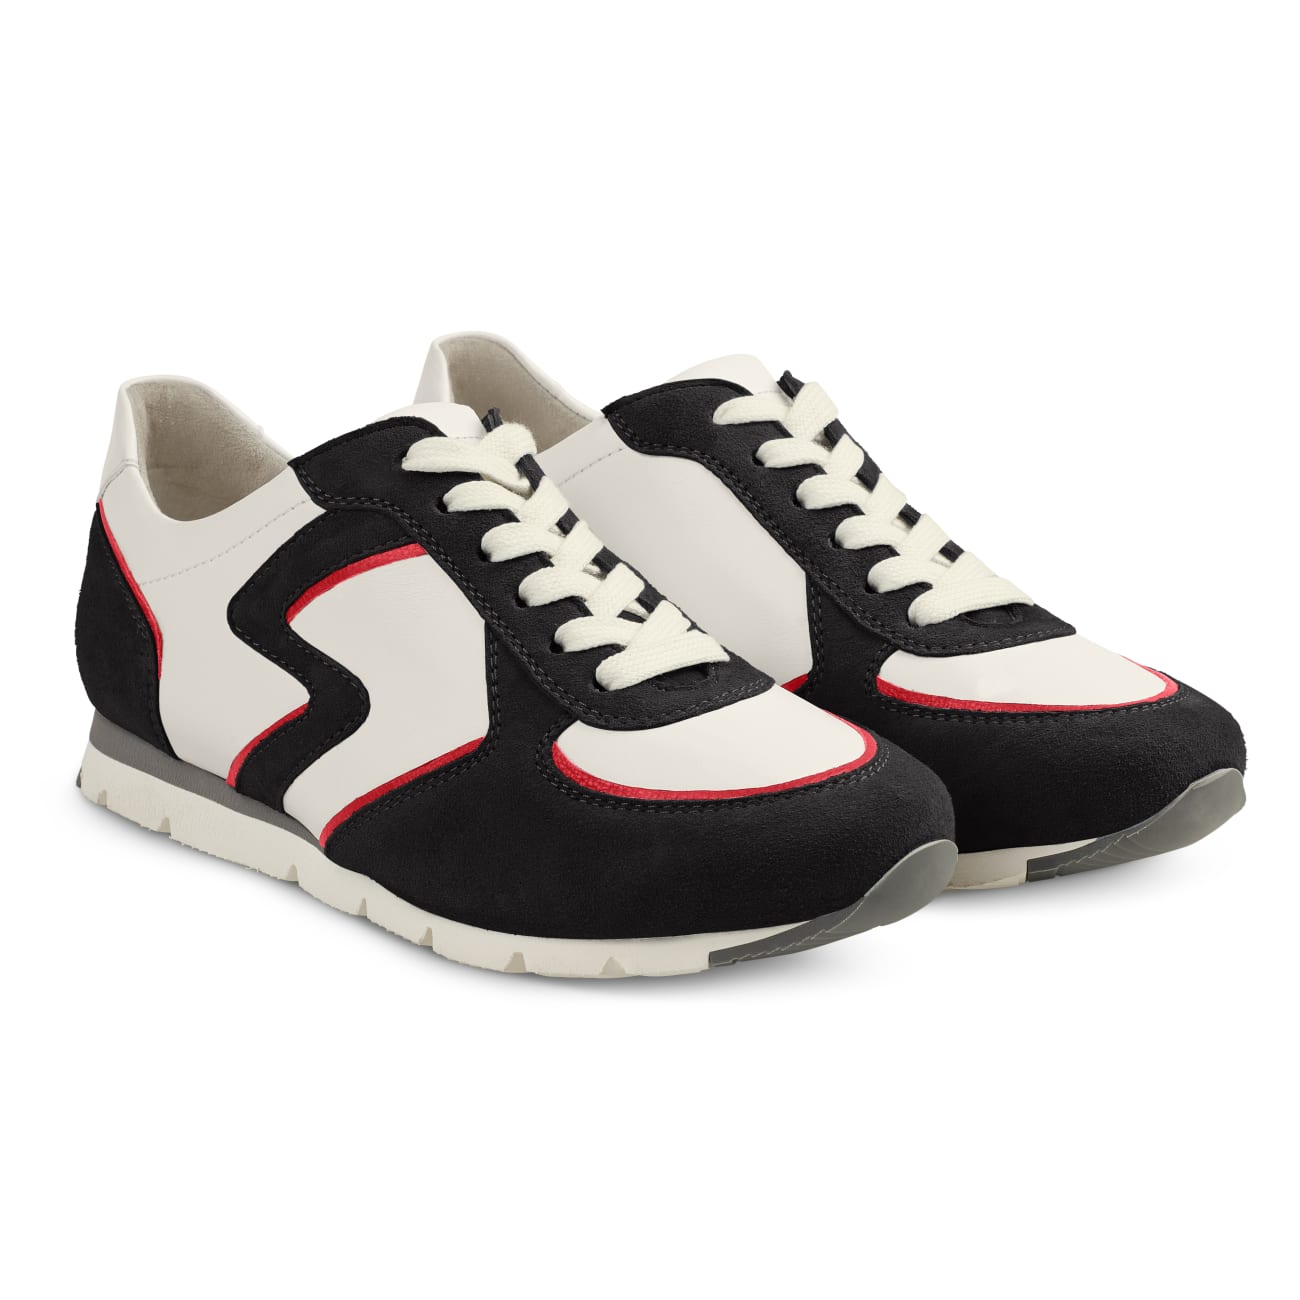 Premium Sneaker Colourline Weiß/Schwarz – modischer und bequemer Schuh für Hallux valgus und empfindliche Füße von LaShoe.de